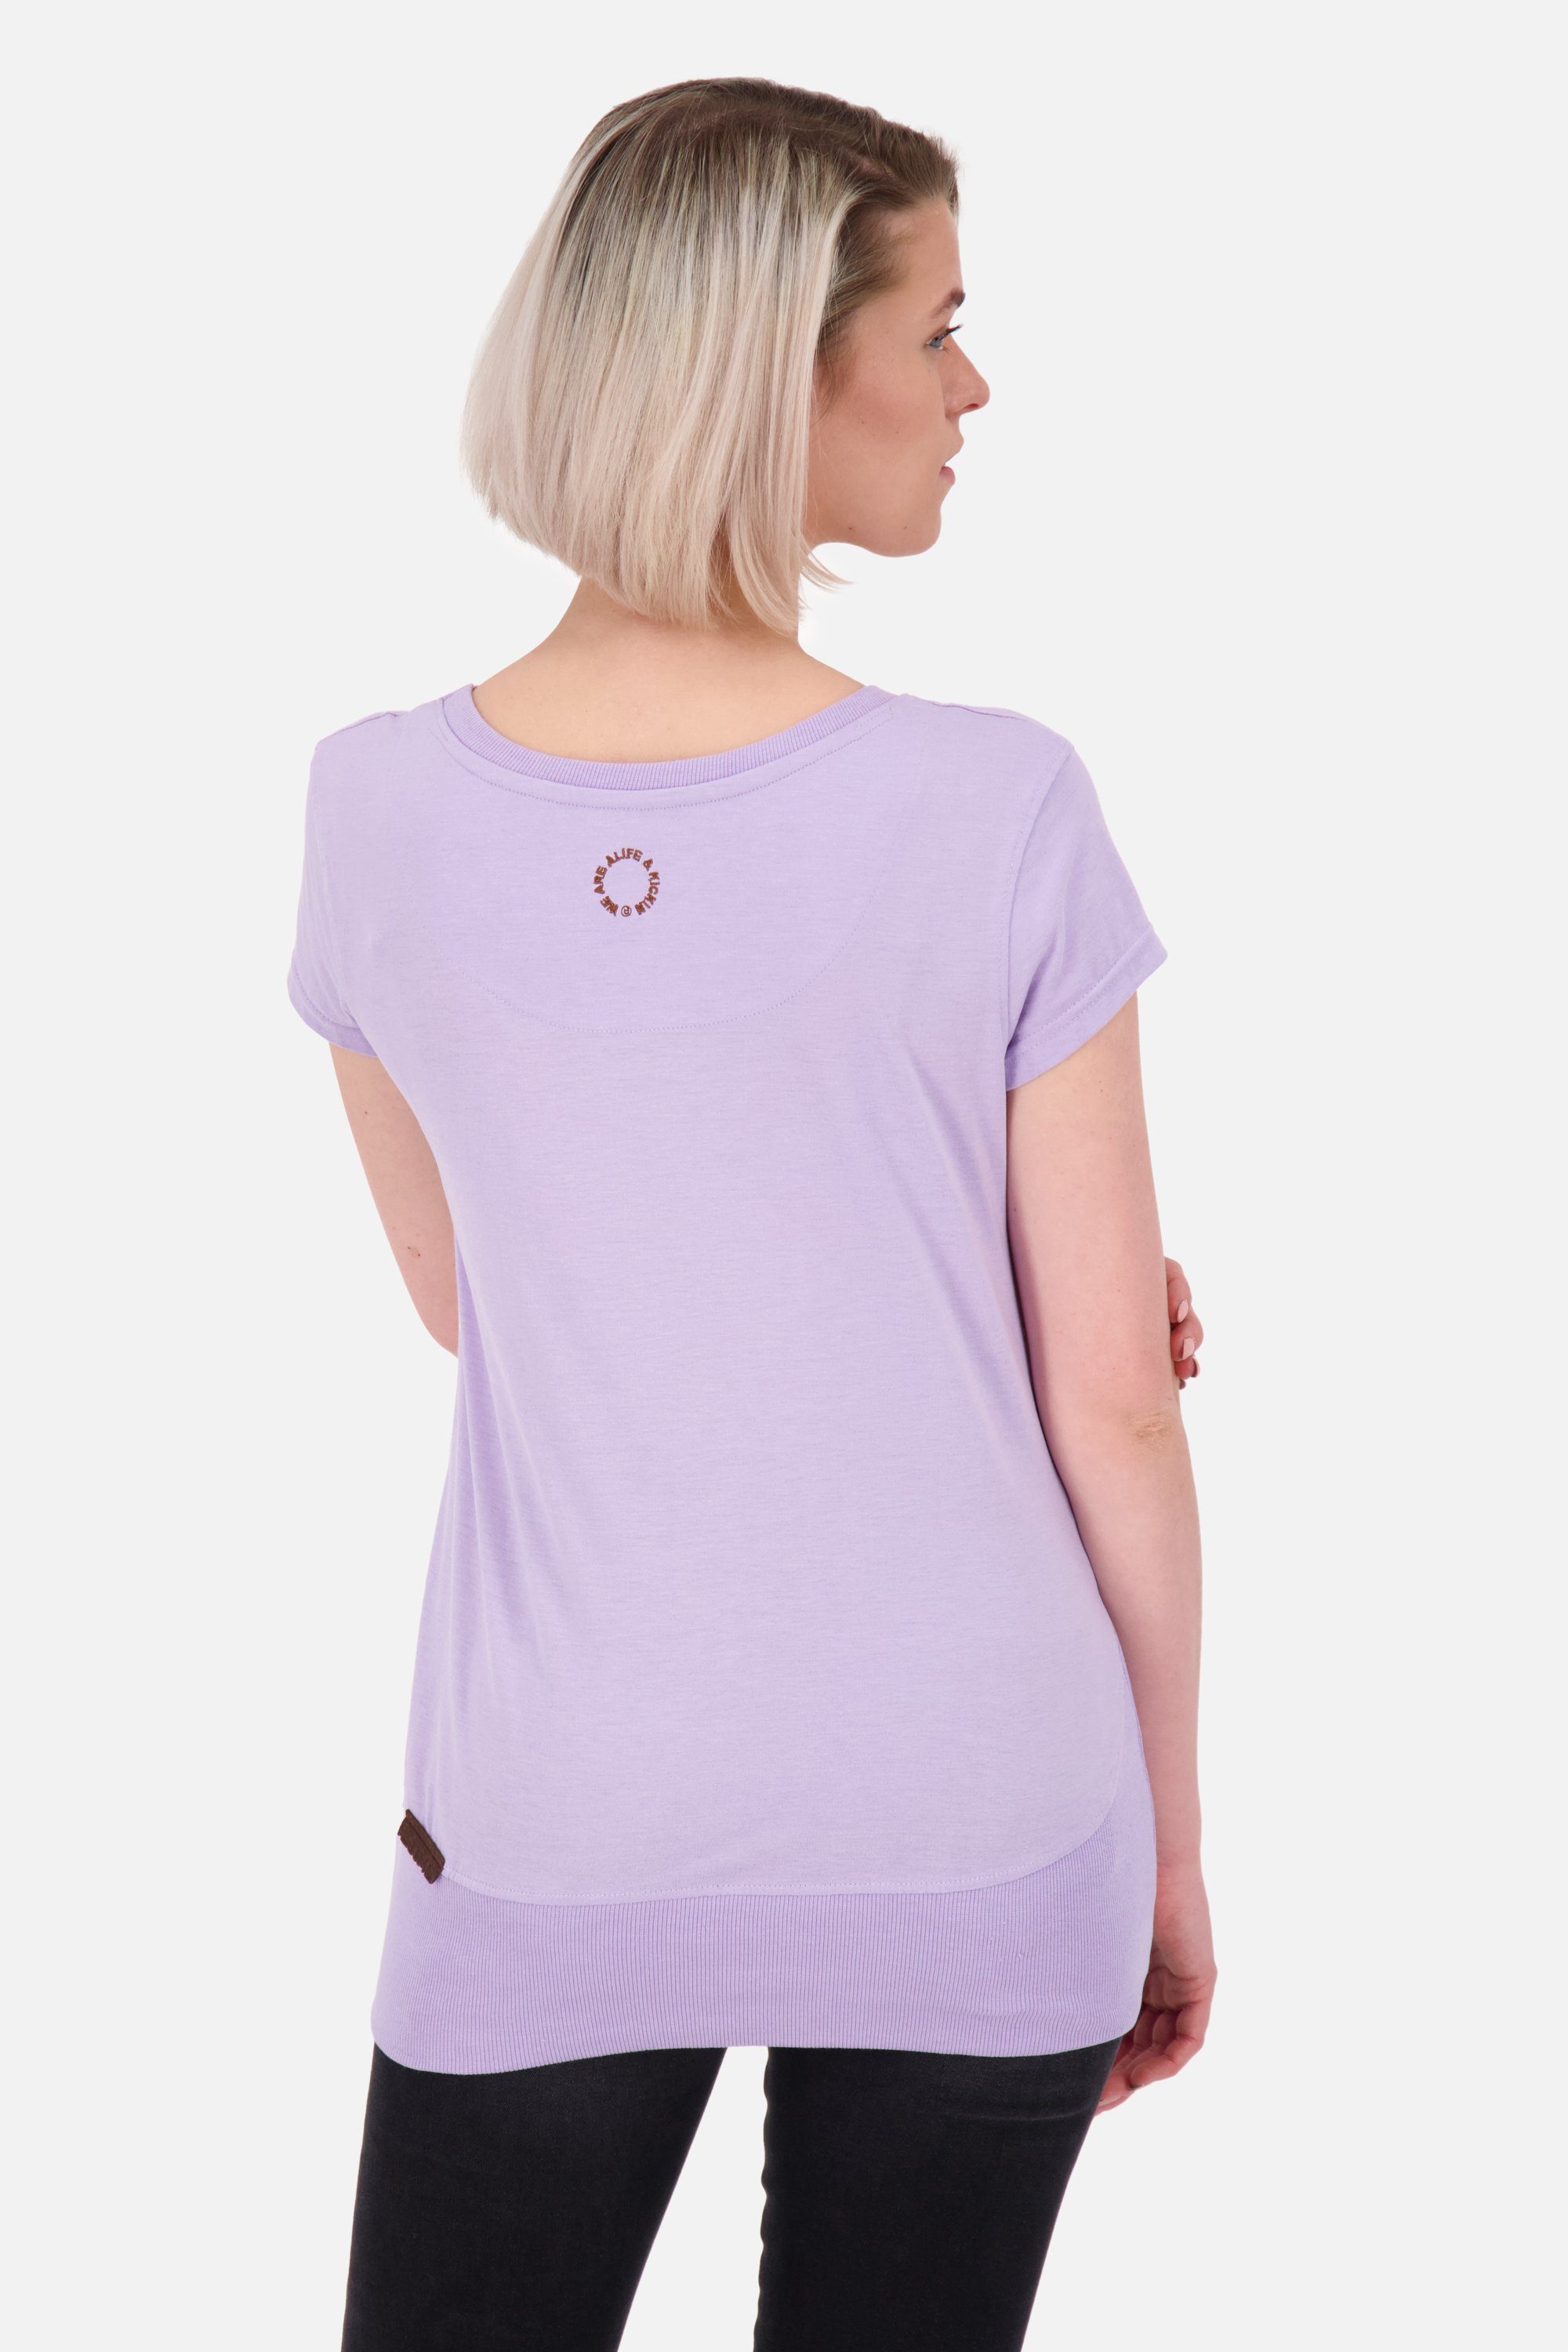 Alife & lavender Rundhalsshirt digital ClementinaAK A Kurzarmshirt, Shirt Shirt Damen melange Kickin